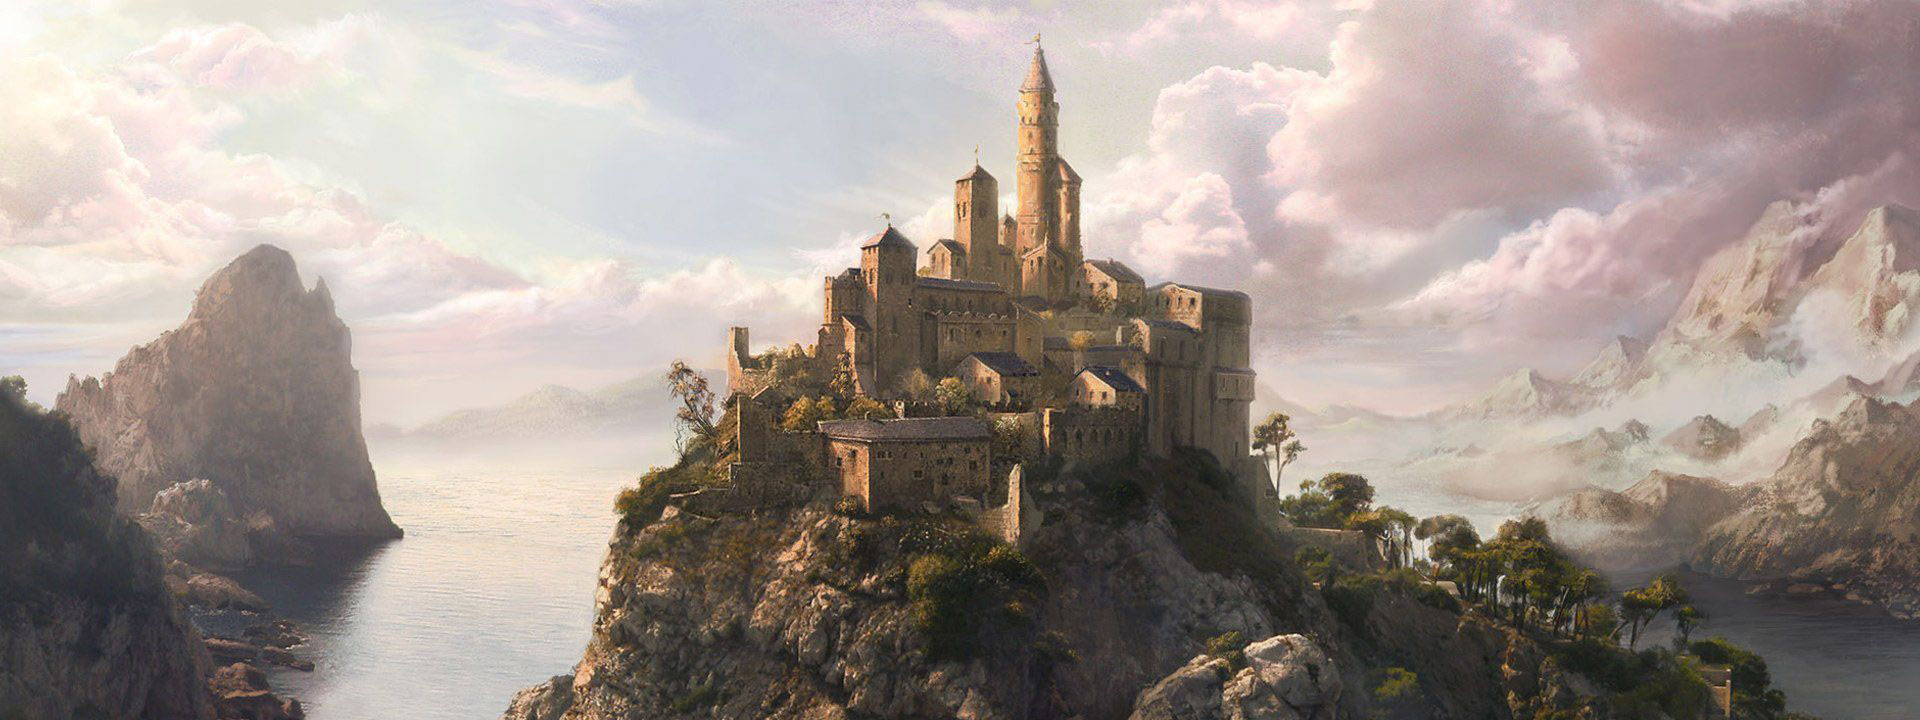 Imagem dos contos narrados com um castelo em uma montanha